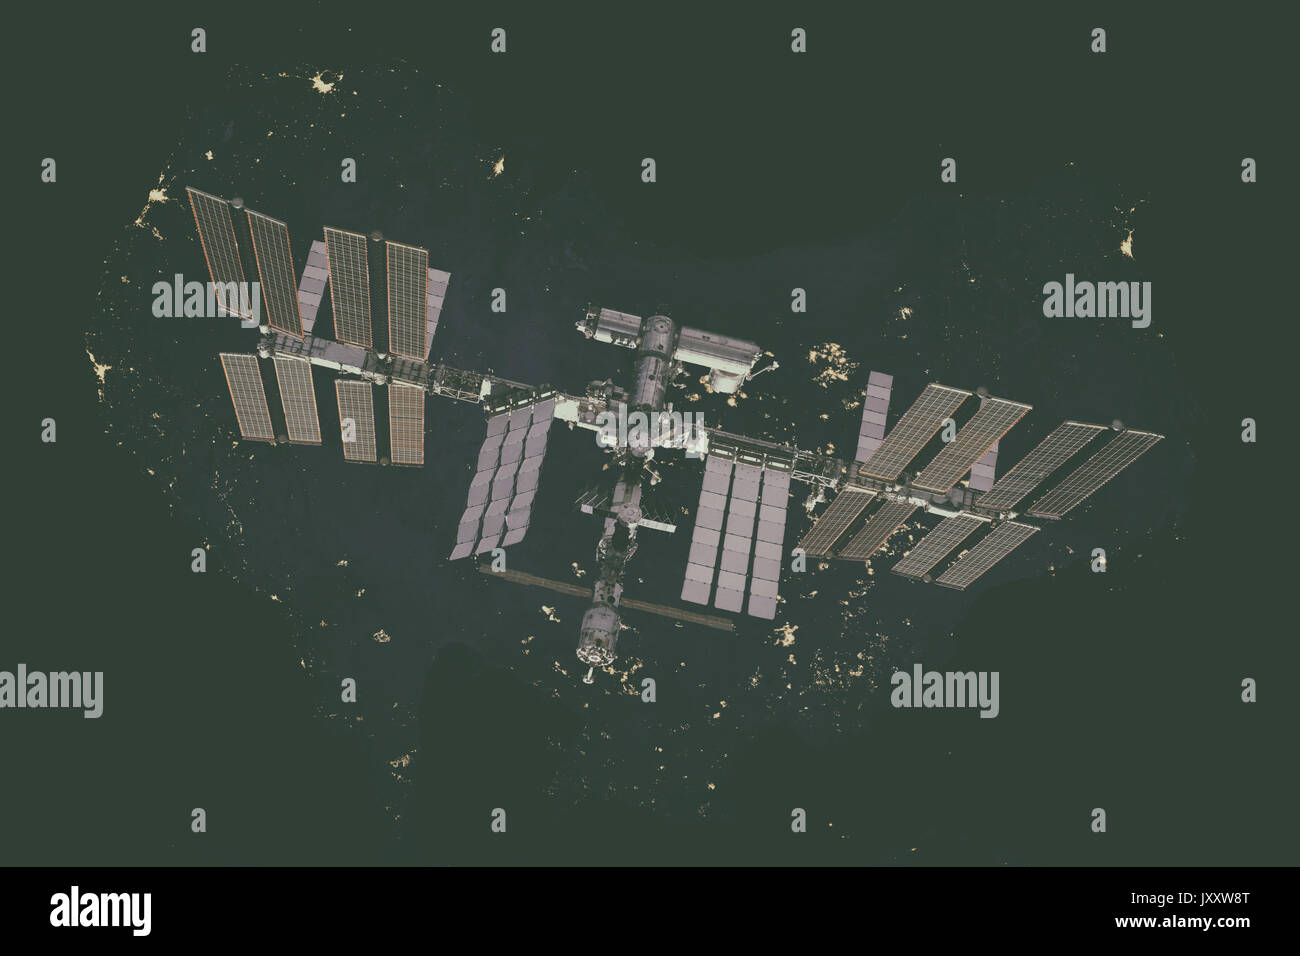 Station spatiale internationale sur l'Australie. Éléments de cette image fournie par la NASA. Banque D'Images